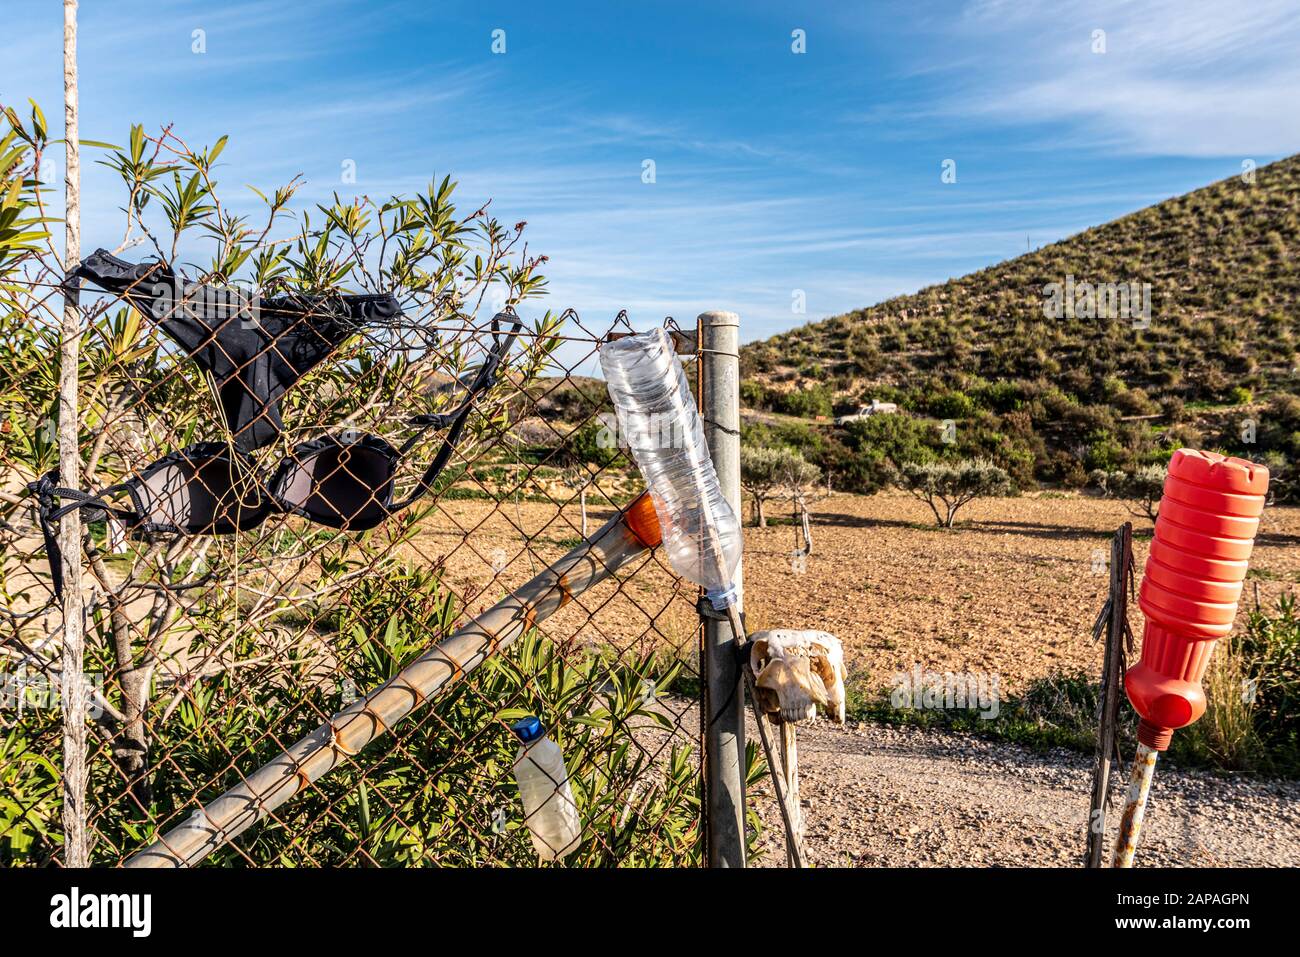 Besondere Darstellung eines Bauerneingangs über Puerto de Mazarron in der  Region Murcia, Costa Calida, Spanien. BH, Unterhosen, Ziegenschädel.  Bizarres, seltsames Set Stockfotografie - Alamy